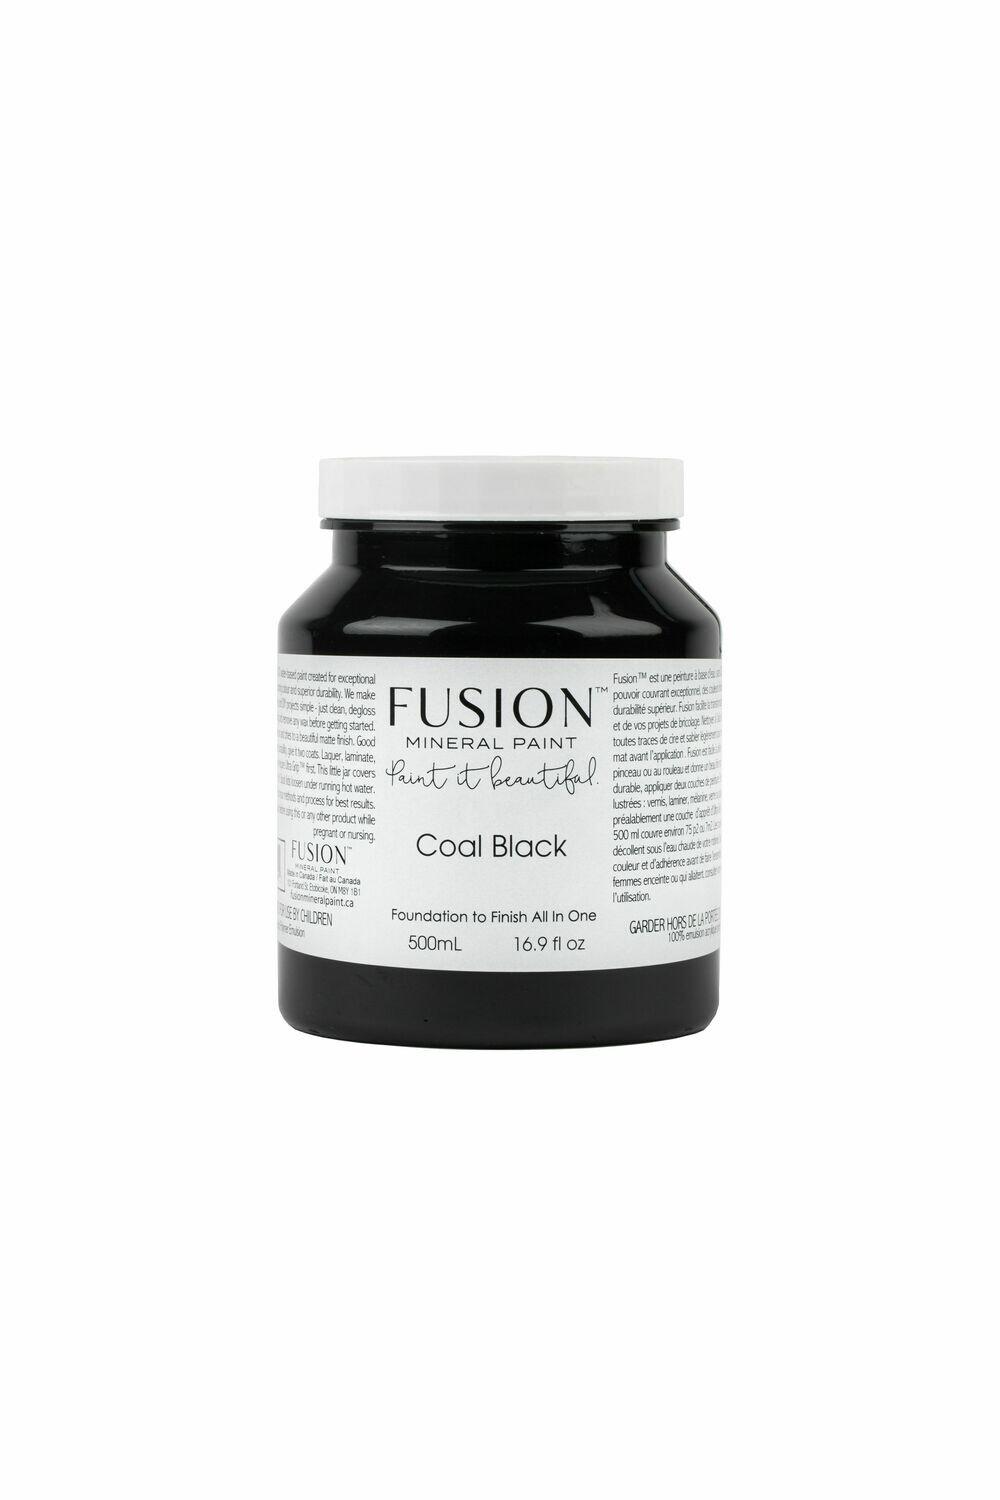 Fusion Paint Coal Black